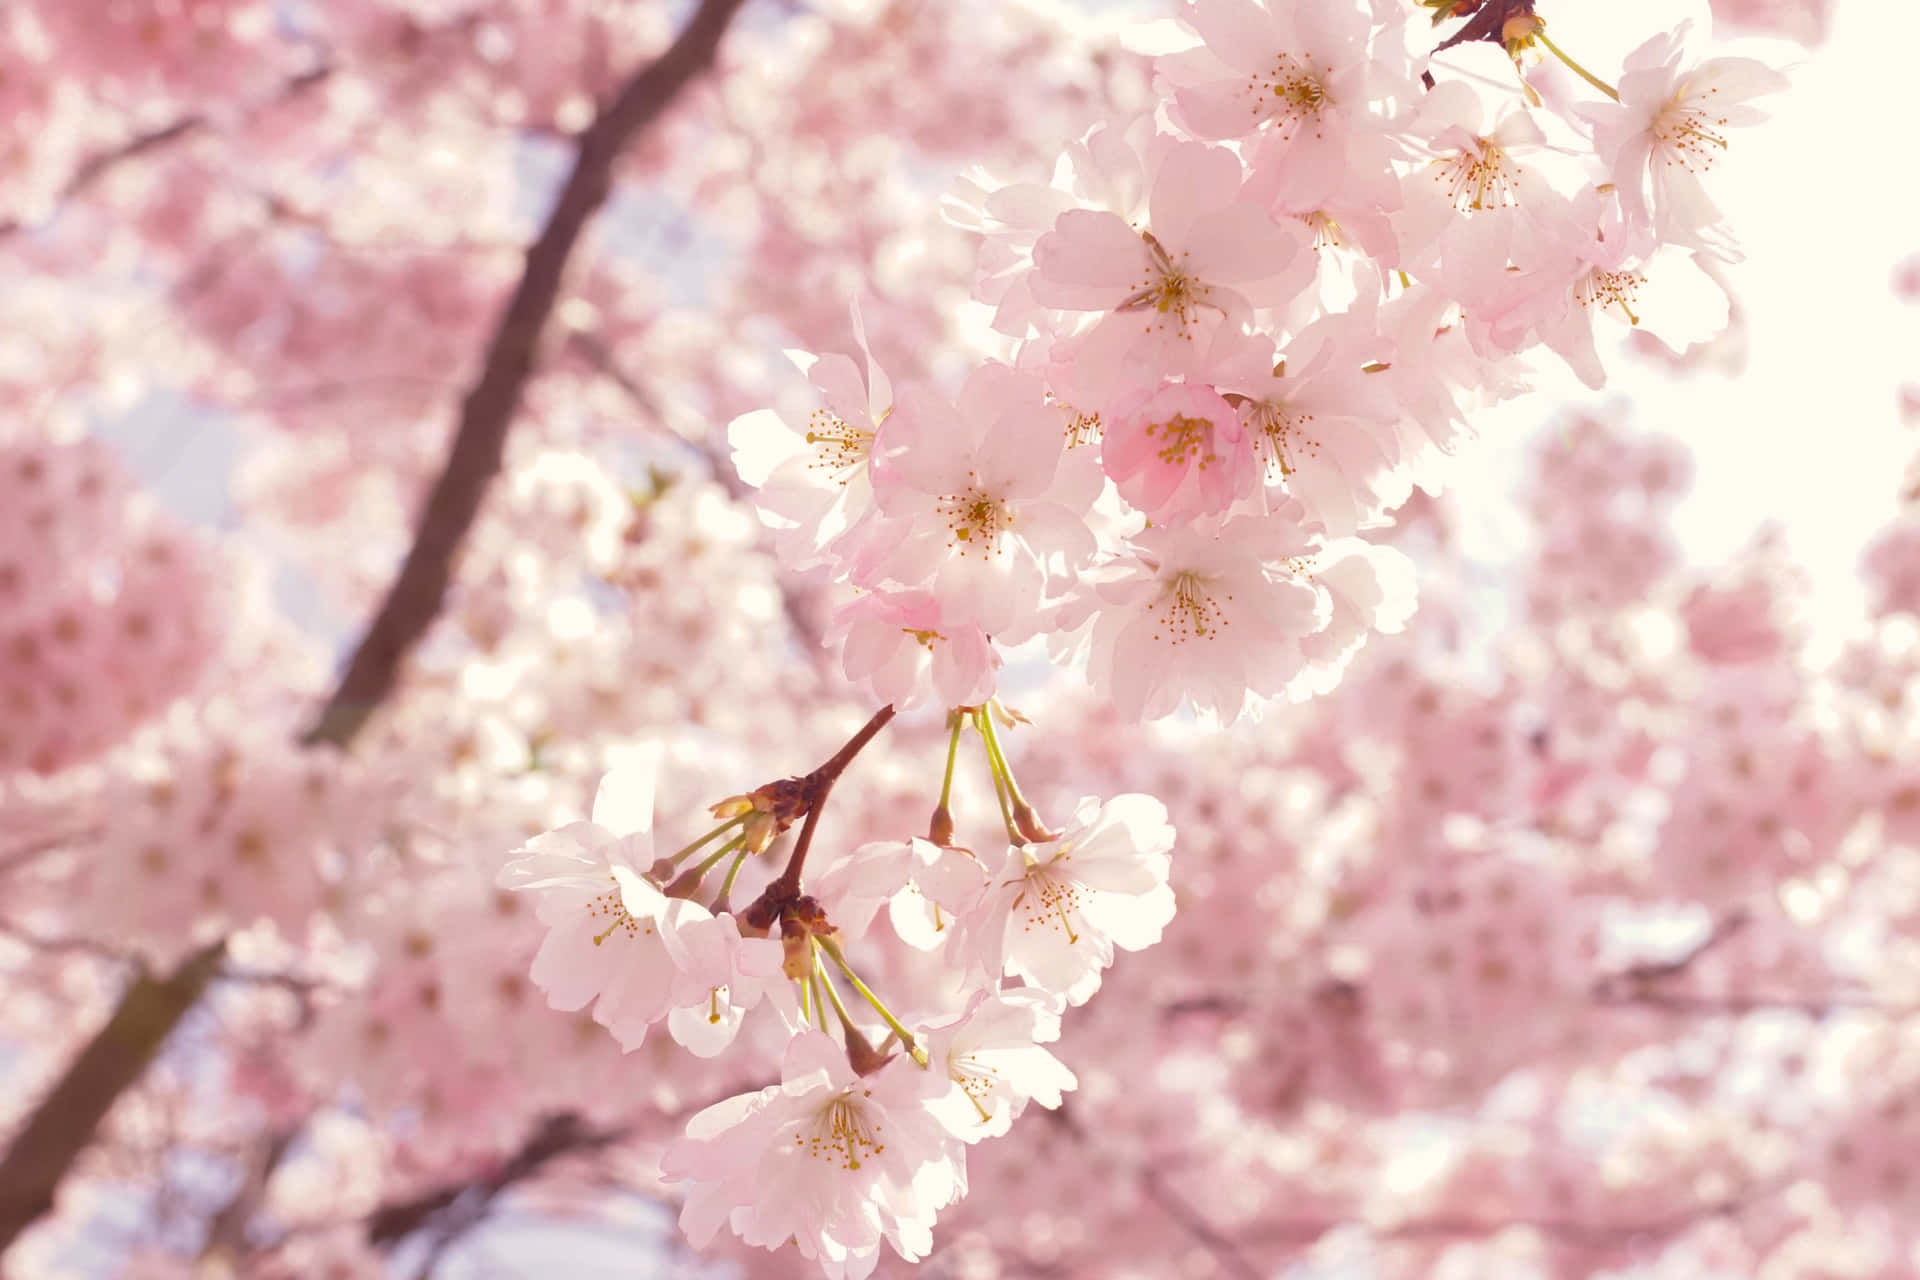 Unavista Pintoresca De Un Árbol De Flores De Sakura En Primavera. Fondo de pantalla